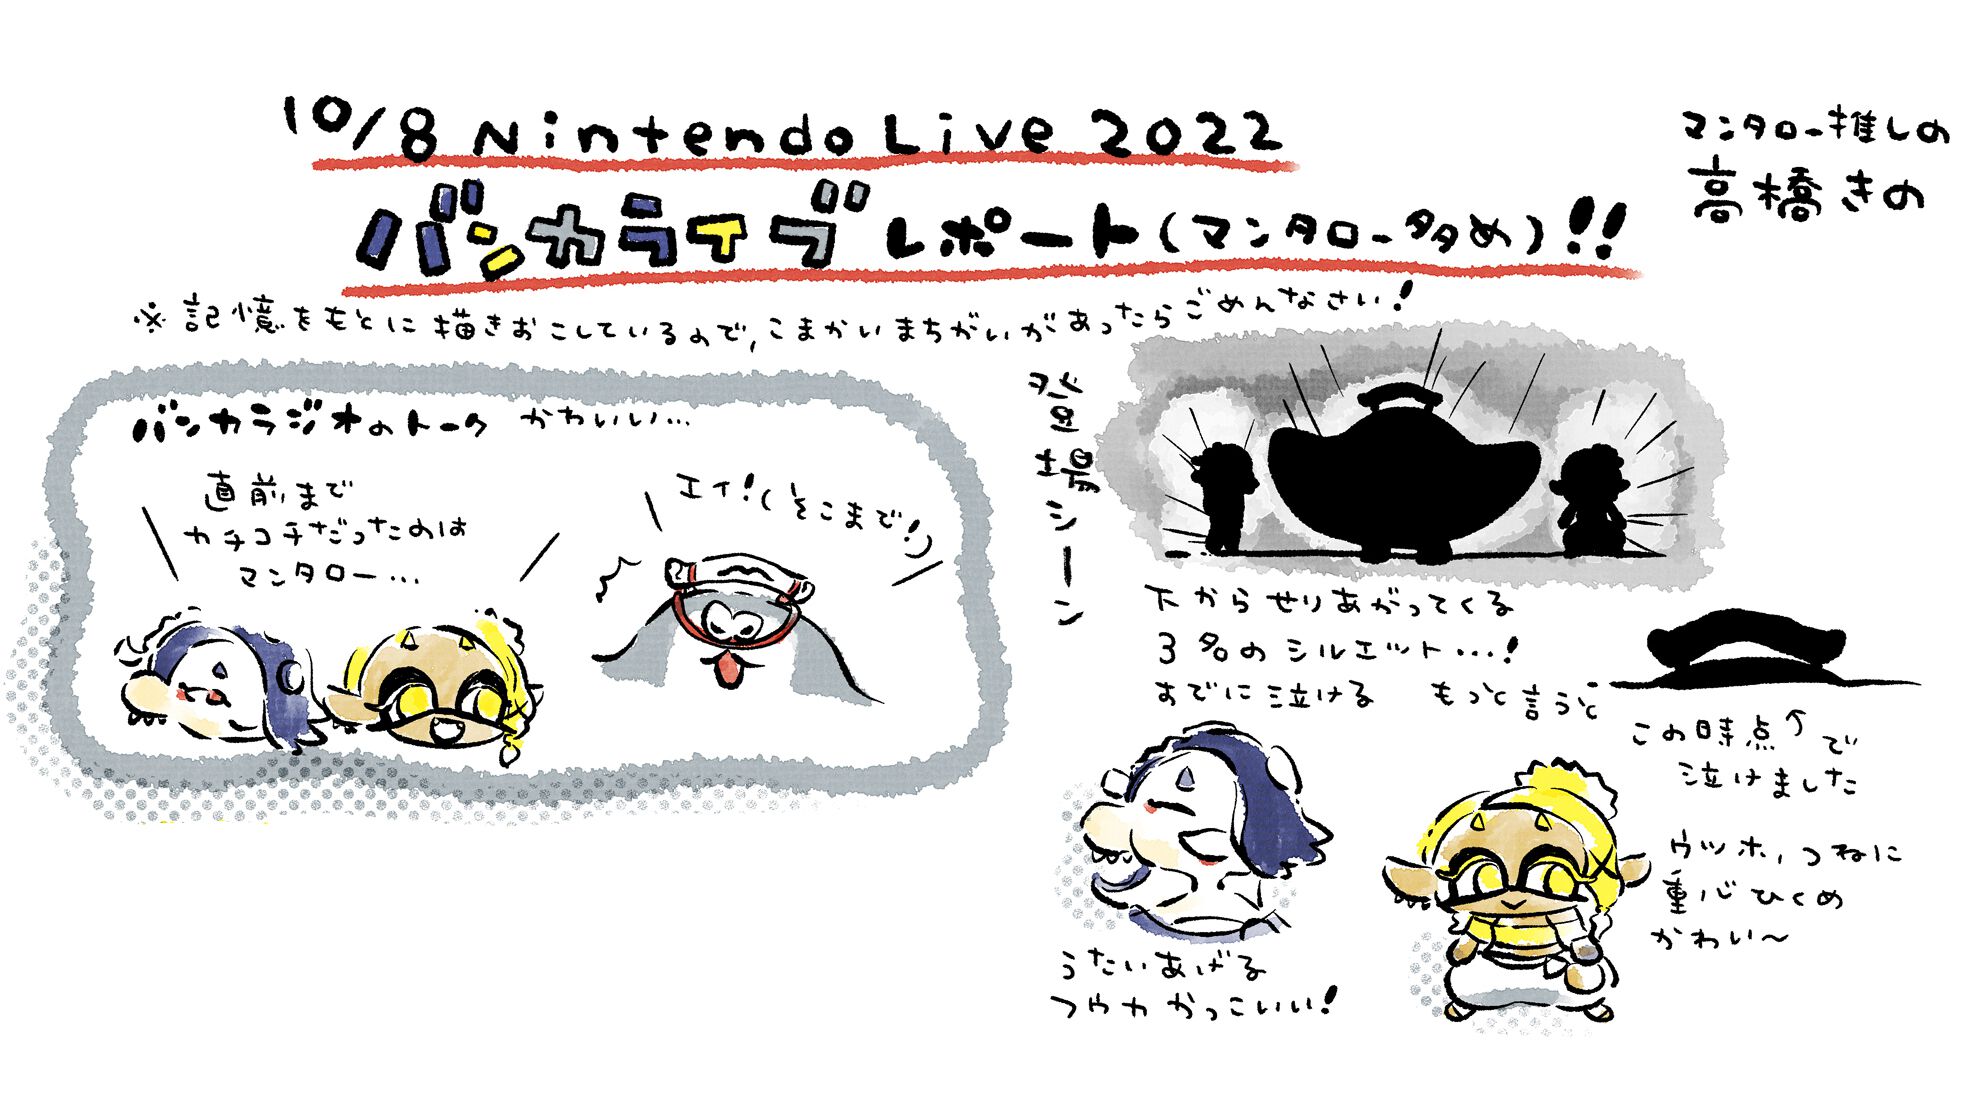 『スプラトゥーン3』バンカライブ、イラストリポート。高橋きの先生がバンカライブの注目ポイントを細部までお届け【Nintendo Live 2022】